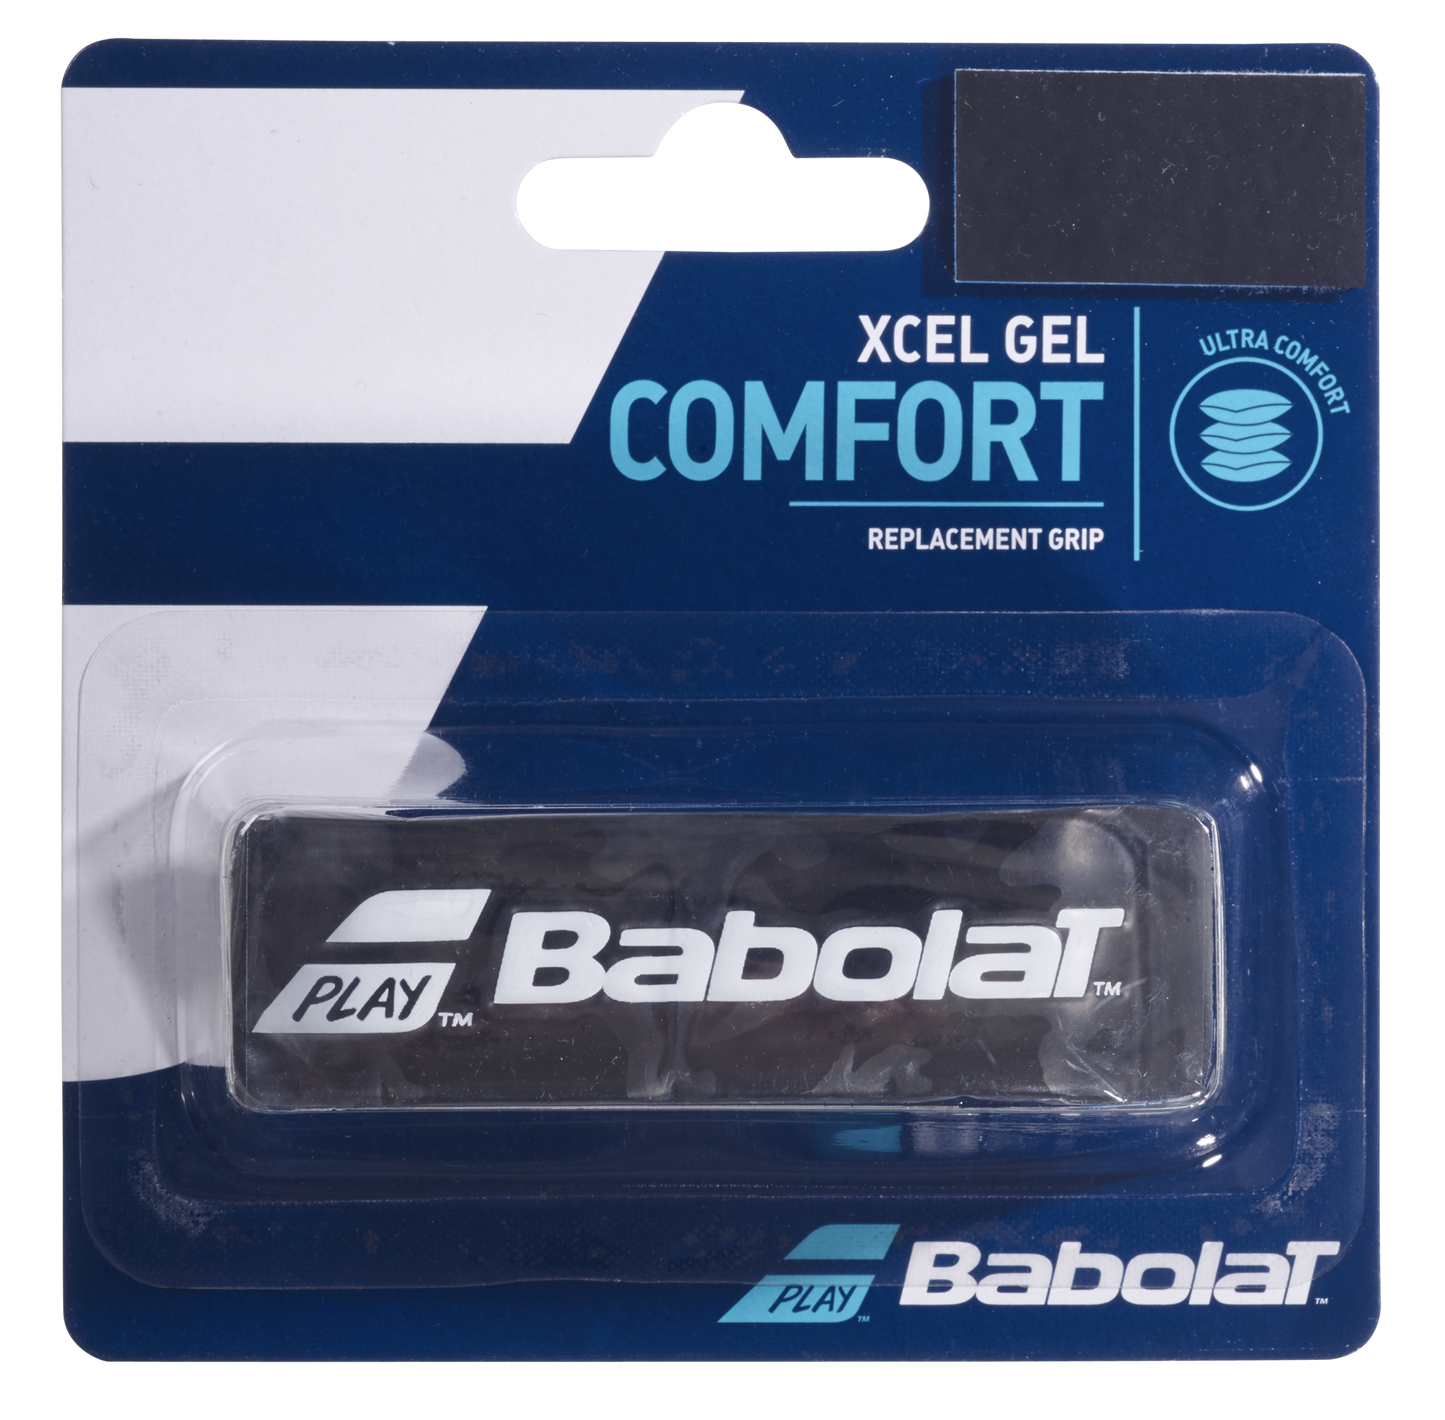 BABOLAT Xcel Gel Comfort Replacement Grip Feel